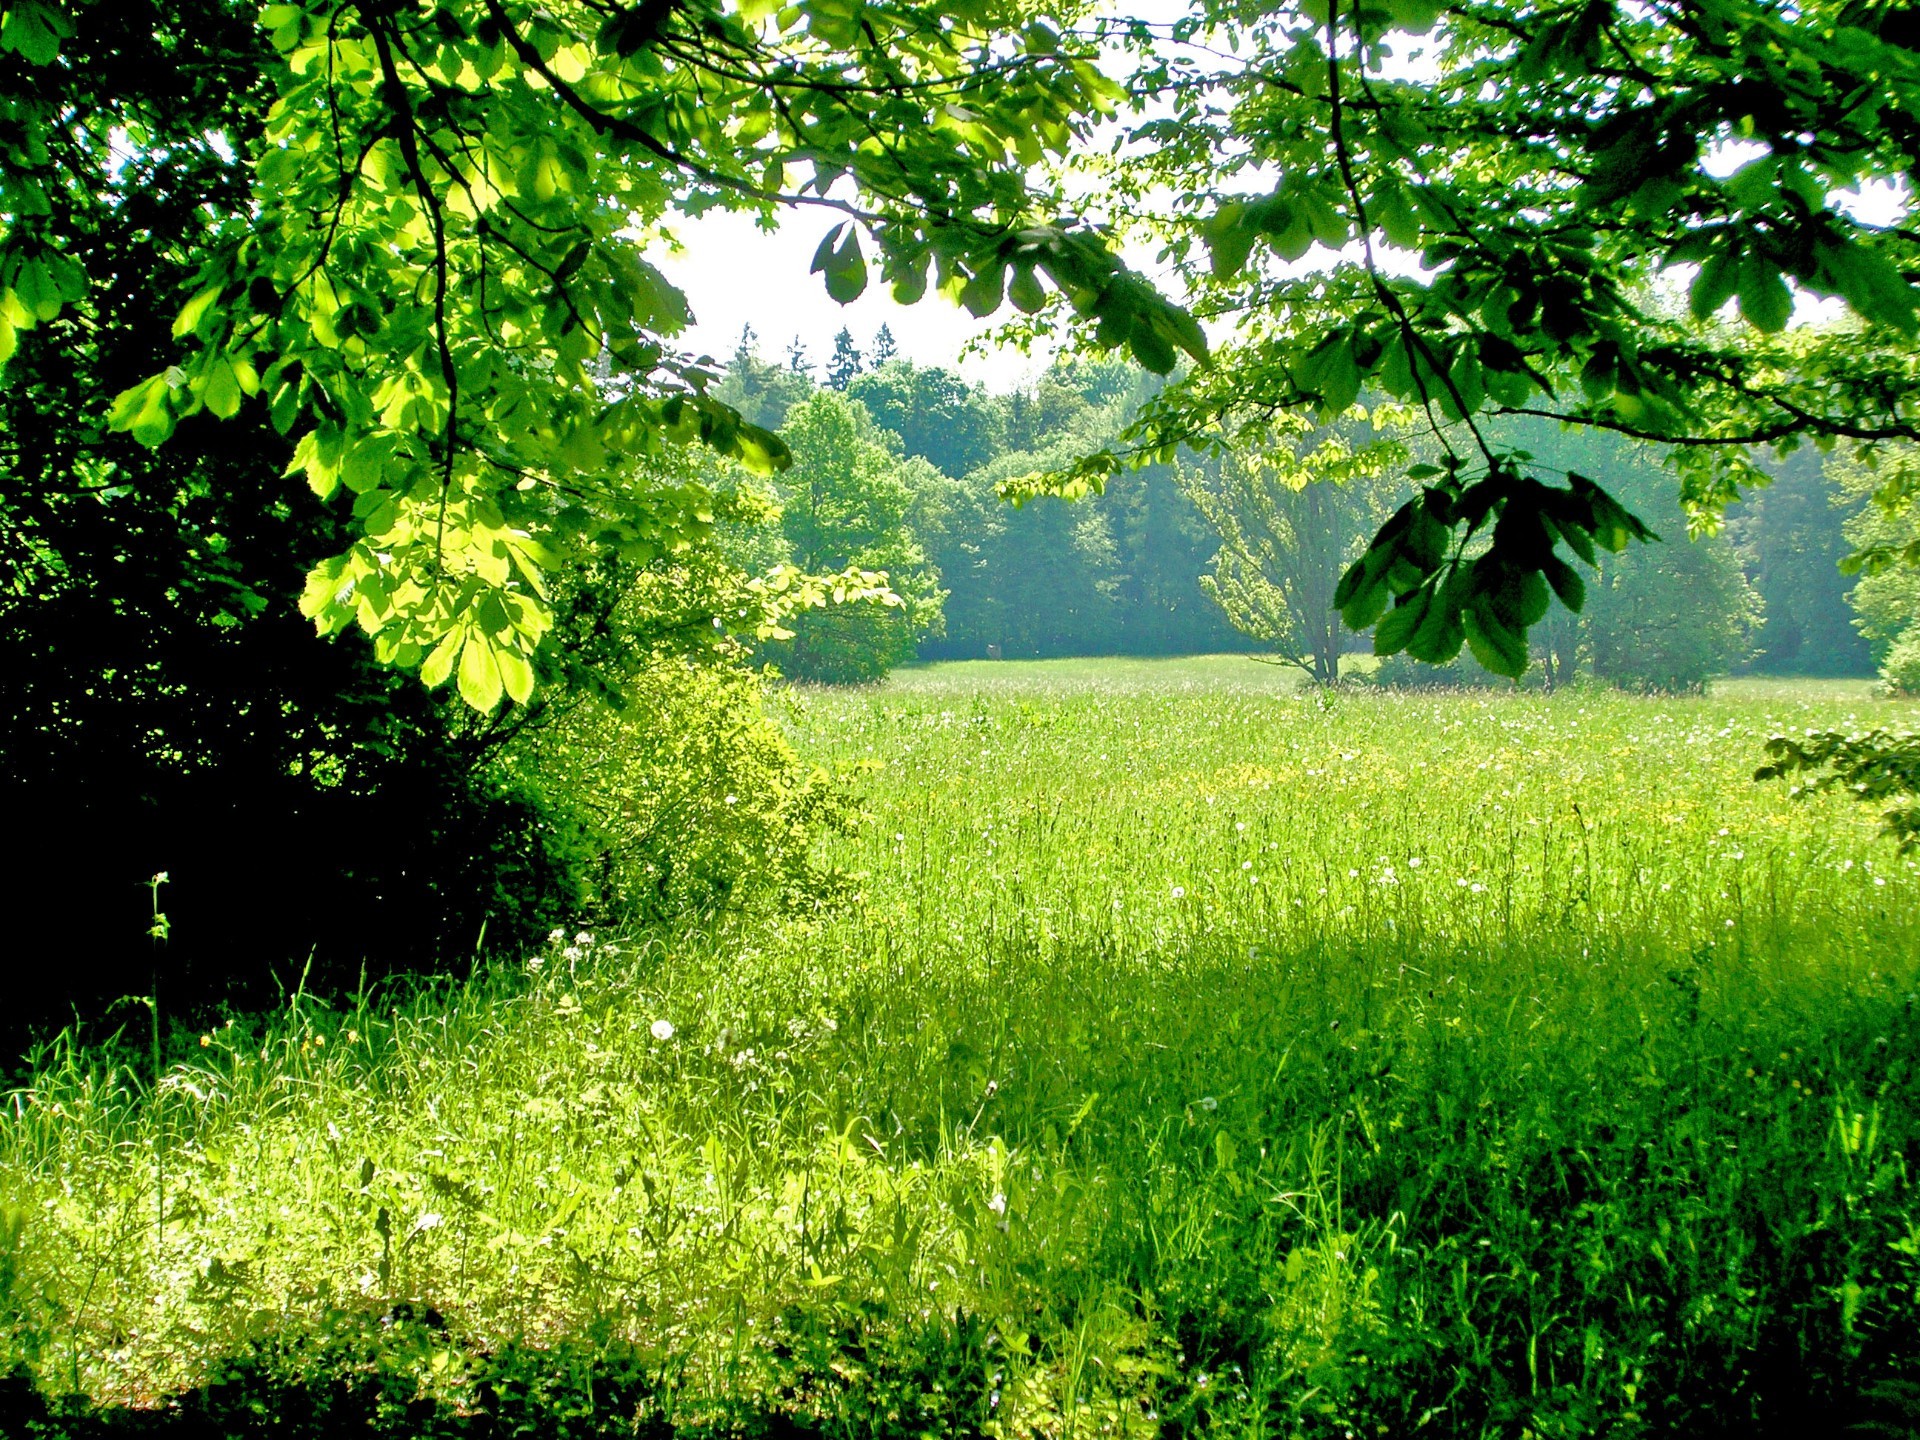 лето природа лист пейзаж древесины дерево флора пышные трава рост среды сельских сезон рассвет живописный парк хорошую погоду сцена на открытом воздухе солнце